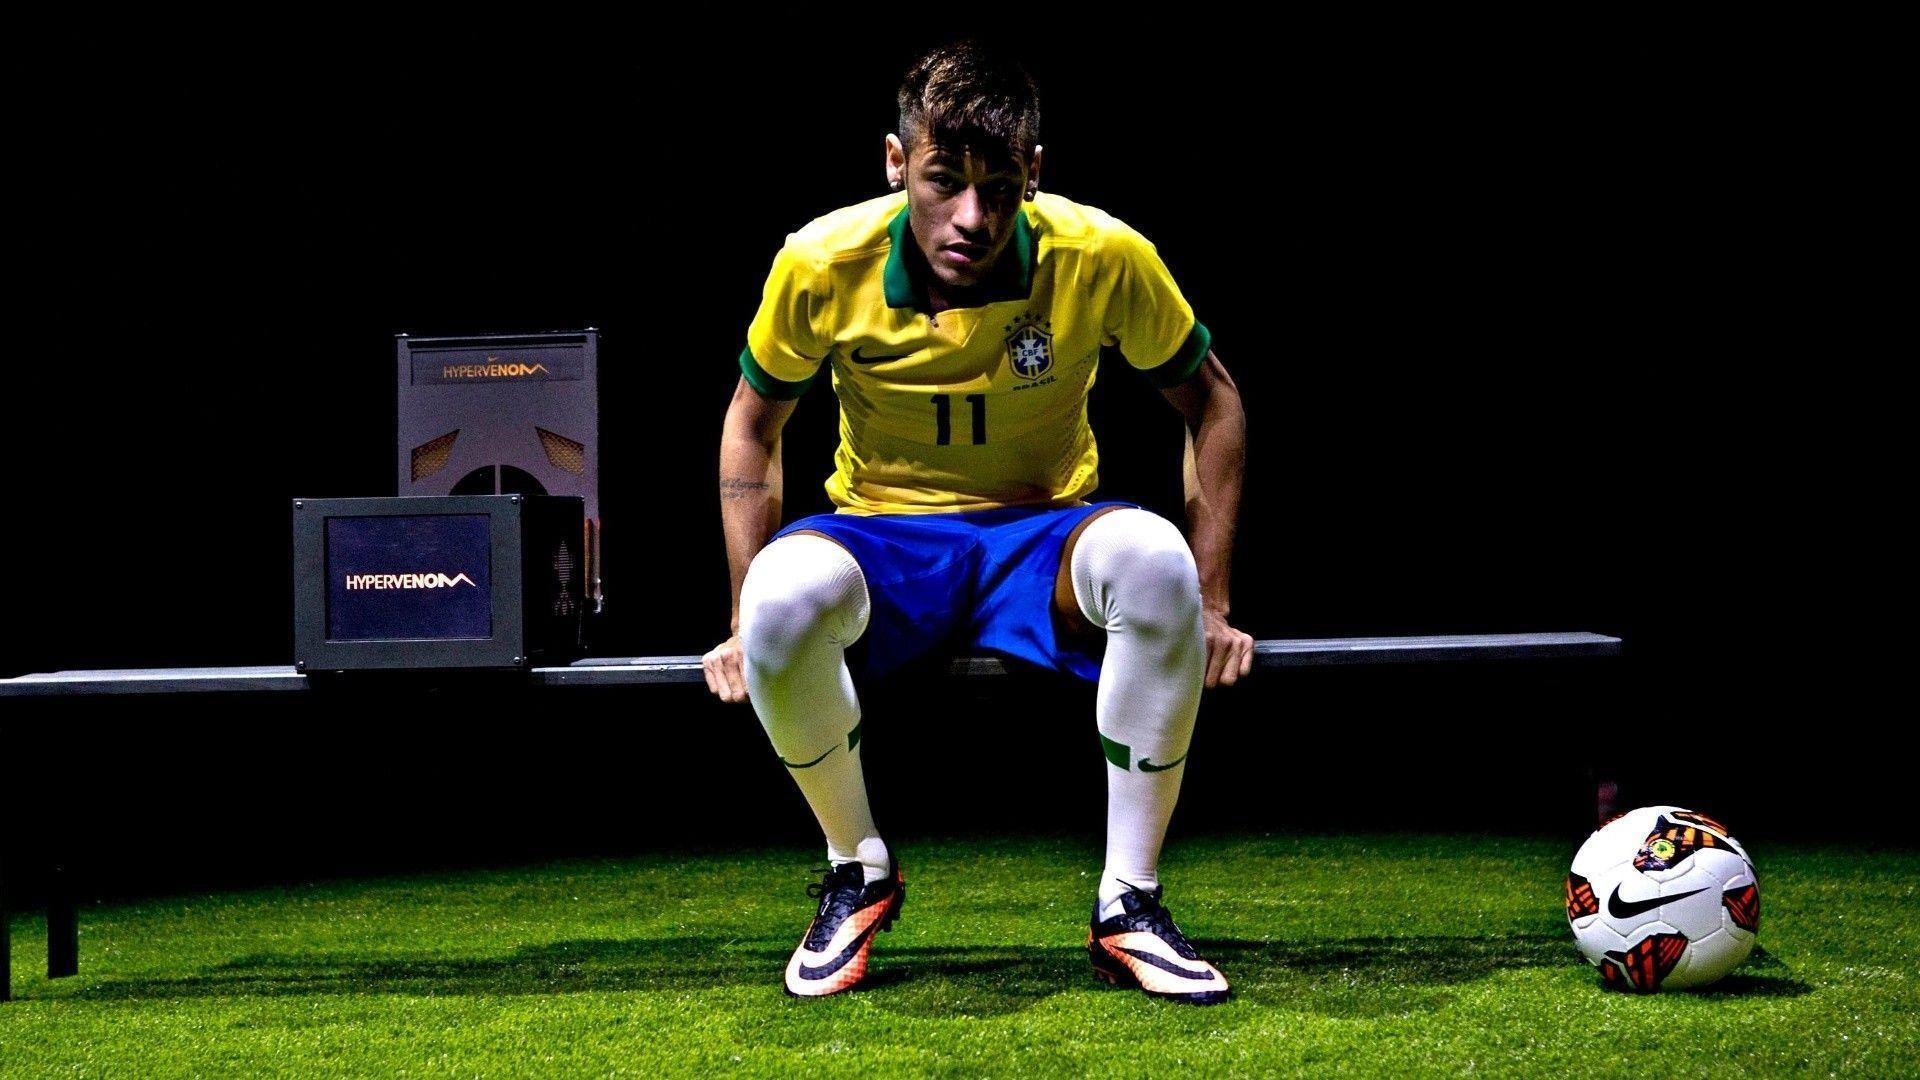 Neymar HD Wallpaper 2015